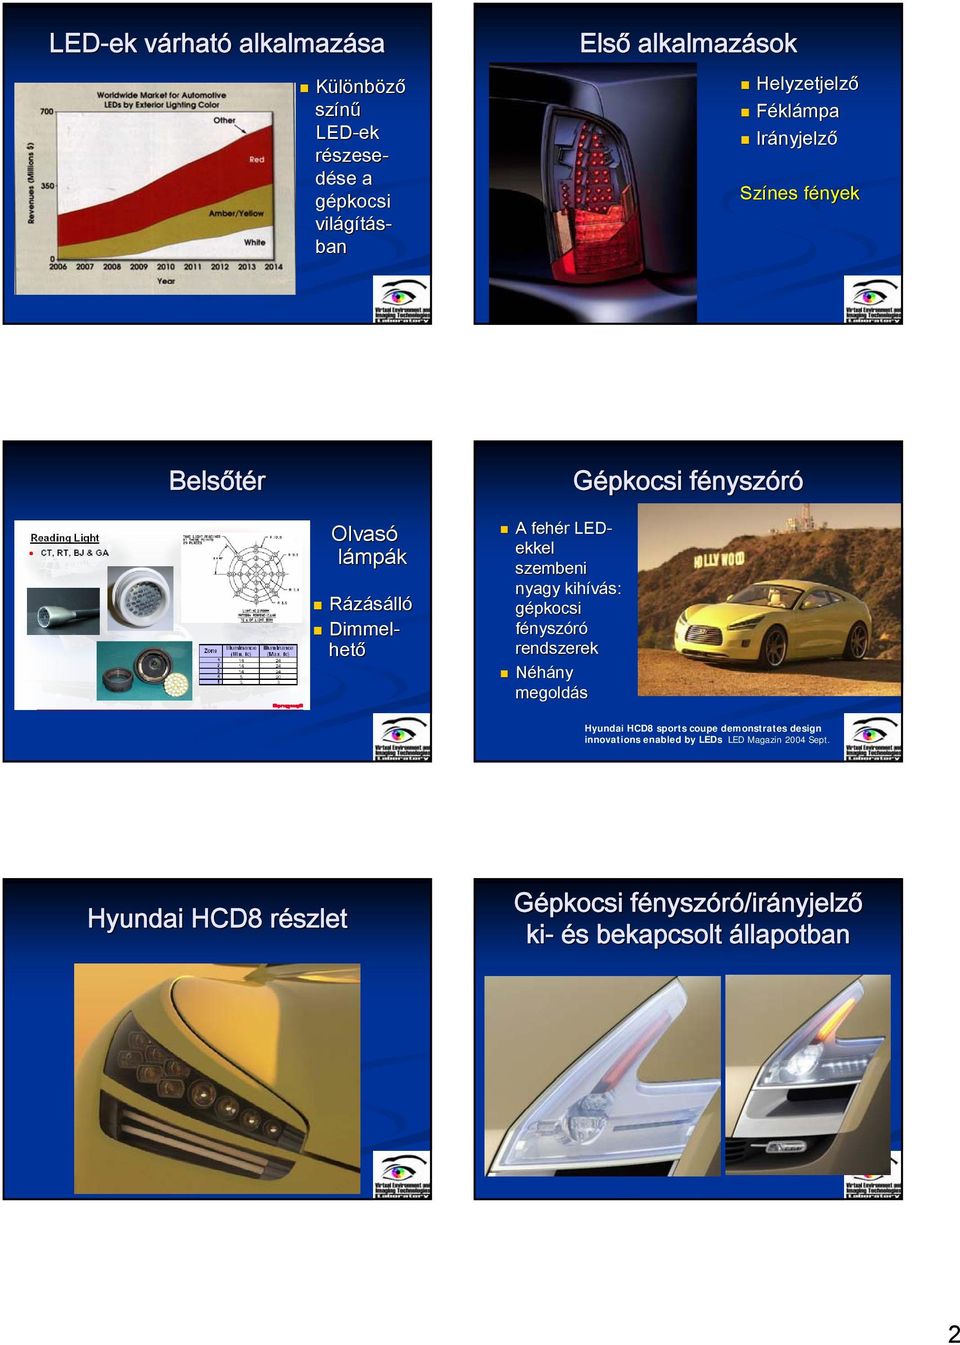 kihívás: gépkocsi fé rendszerek Néhány megoldás Gépkocsi fényszf Hyundai HCD8 sports coupe demonstrates design